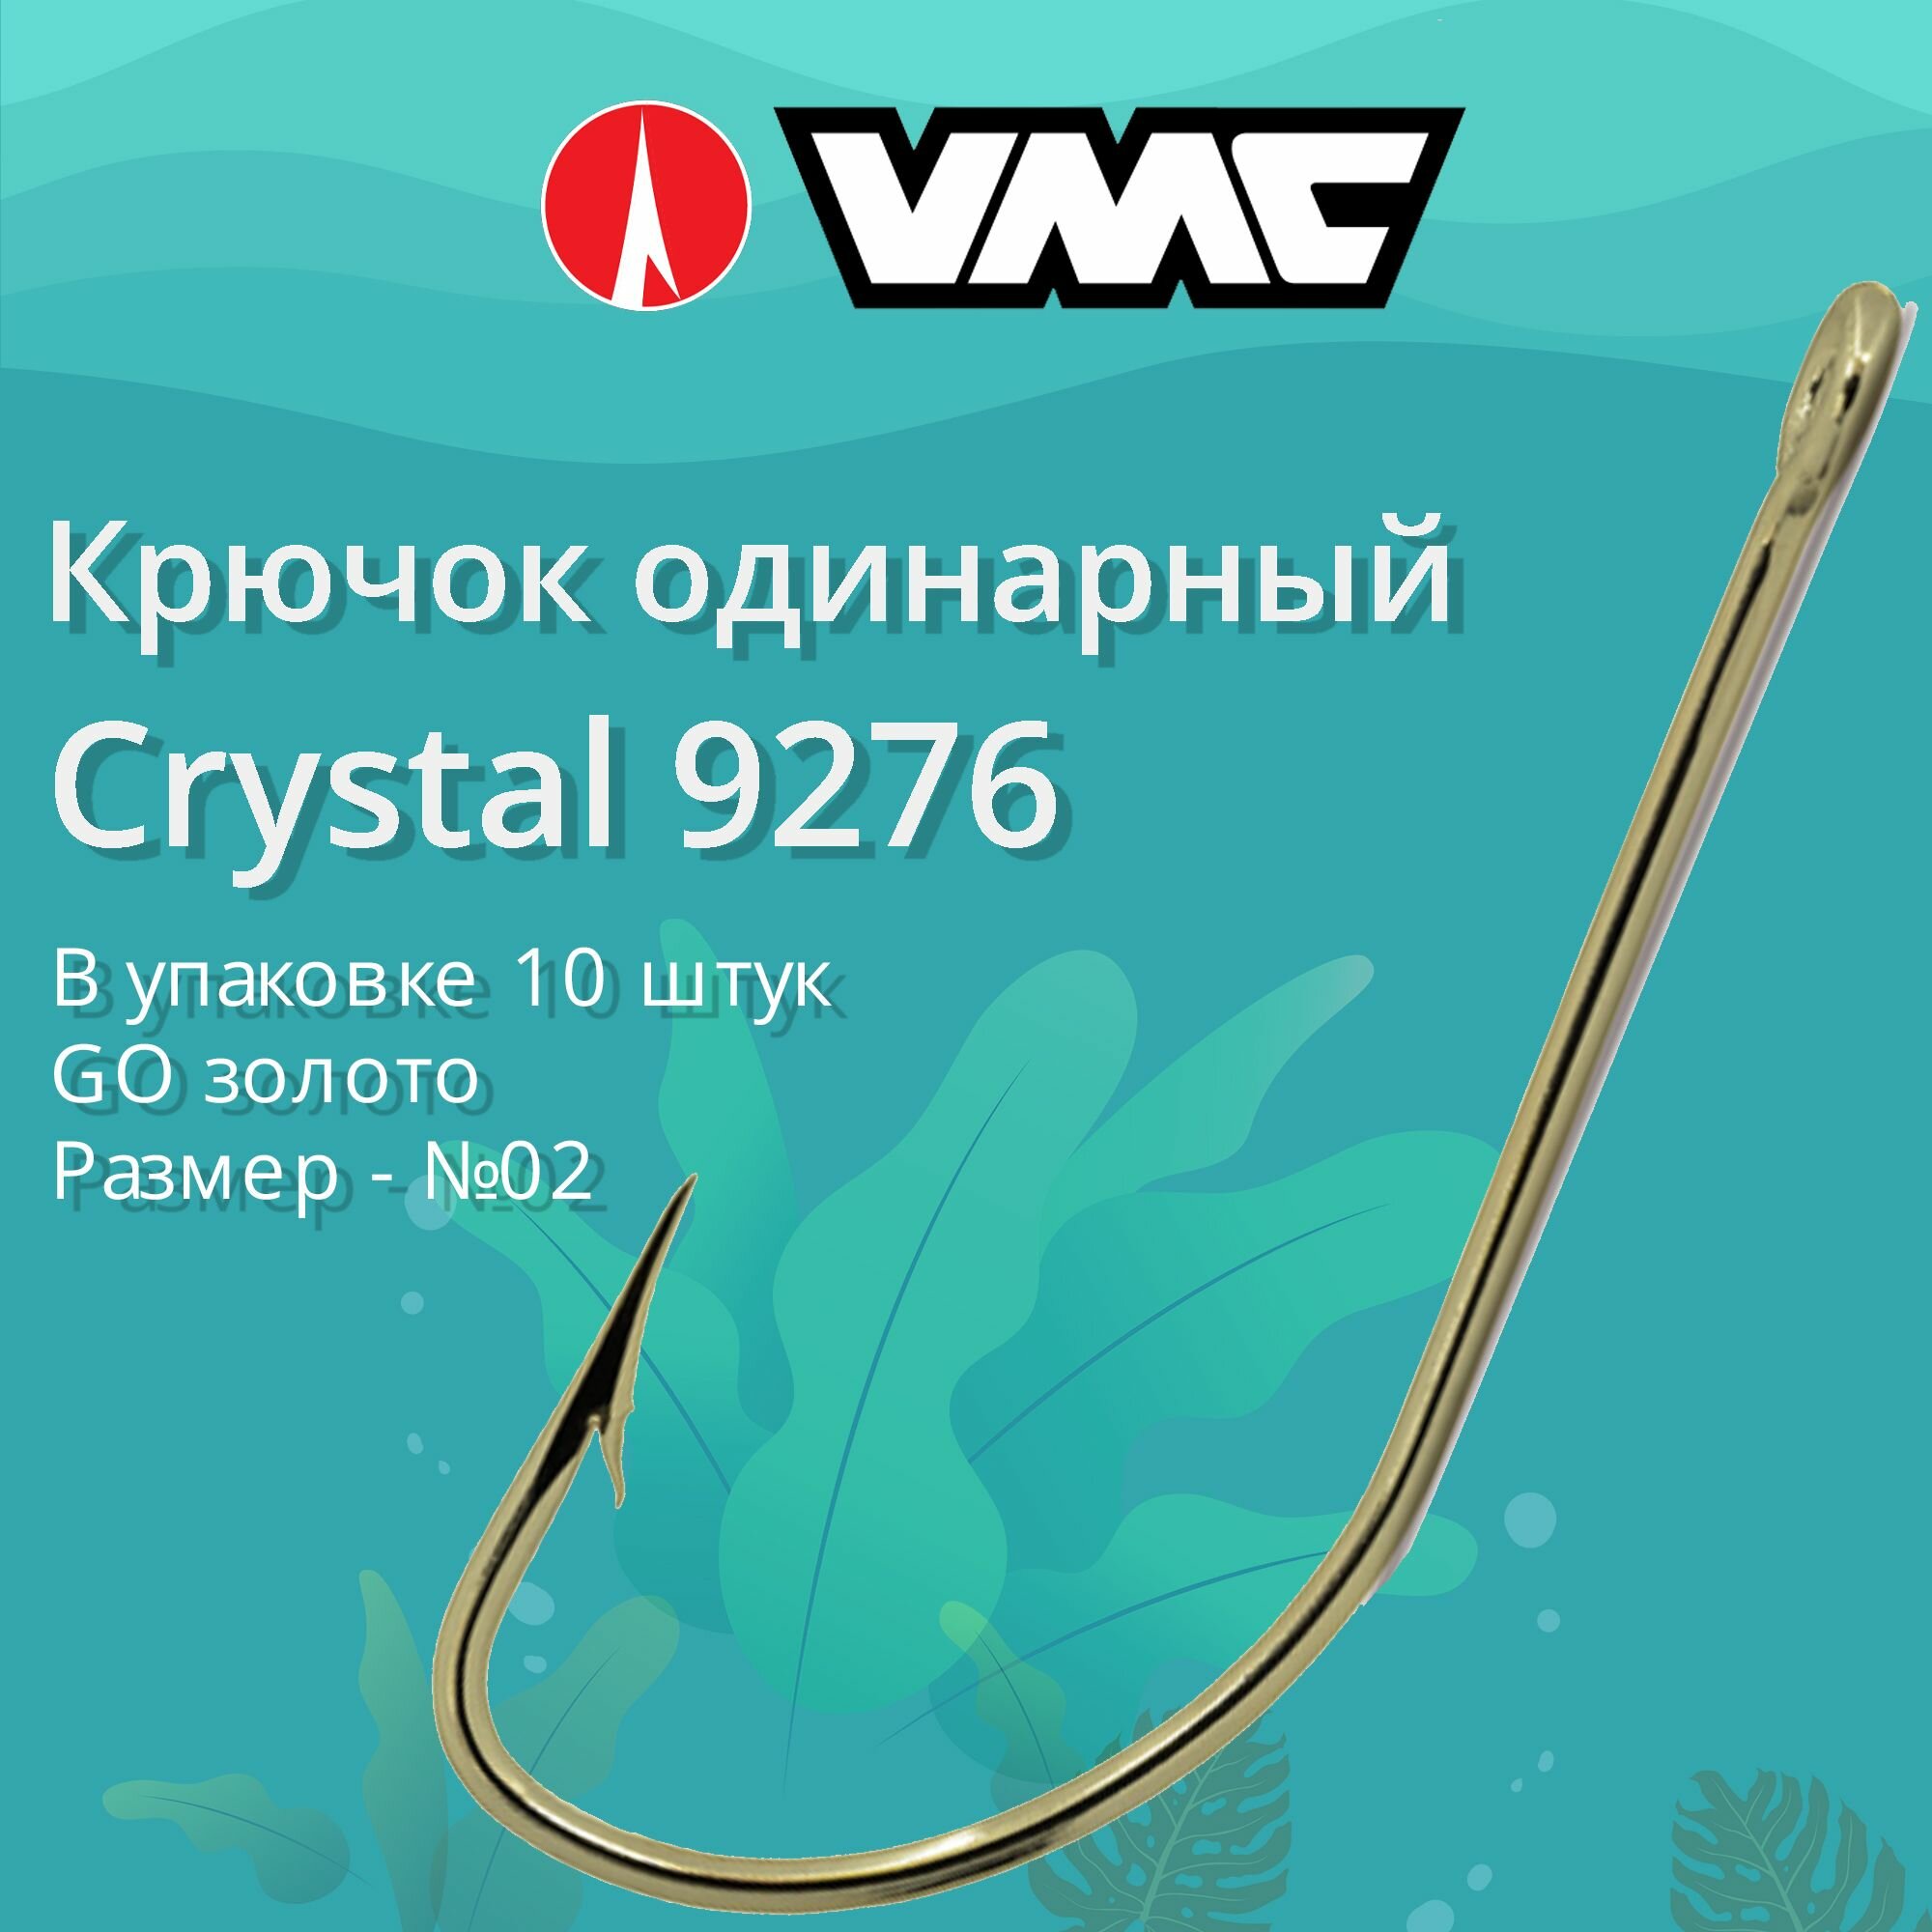 Крючки для рыбалки (одинарный) VMC Crystal 9276 GO (золото) №02 упаковка 10 штук